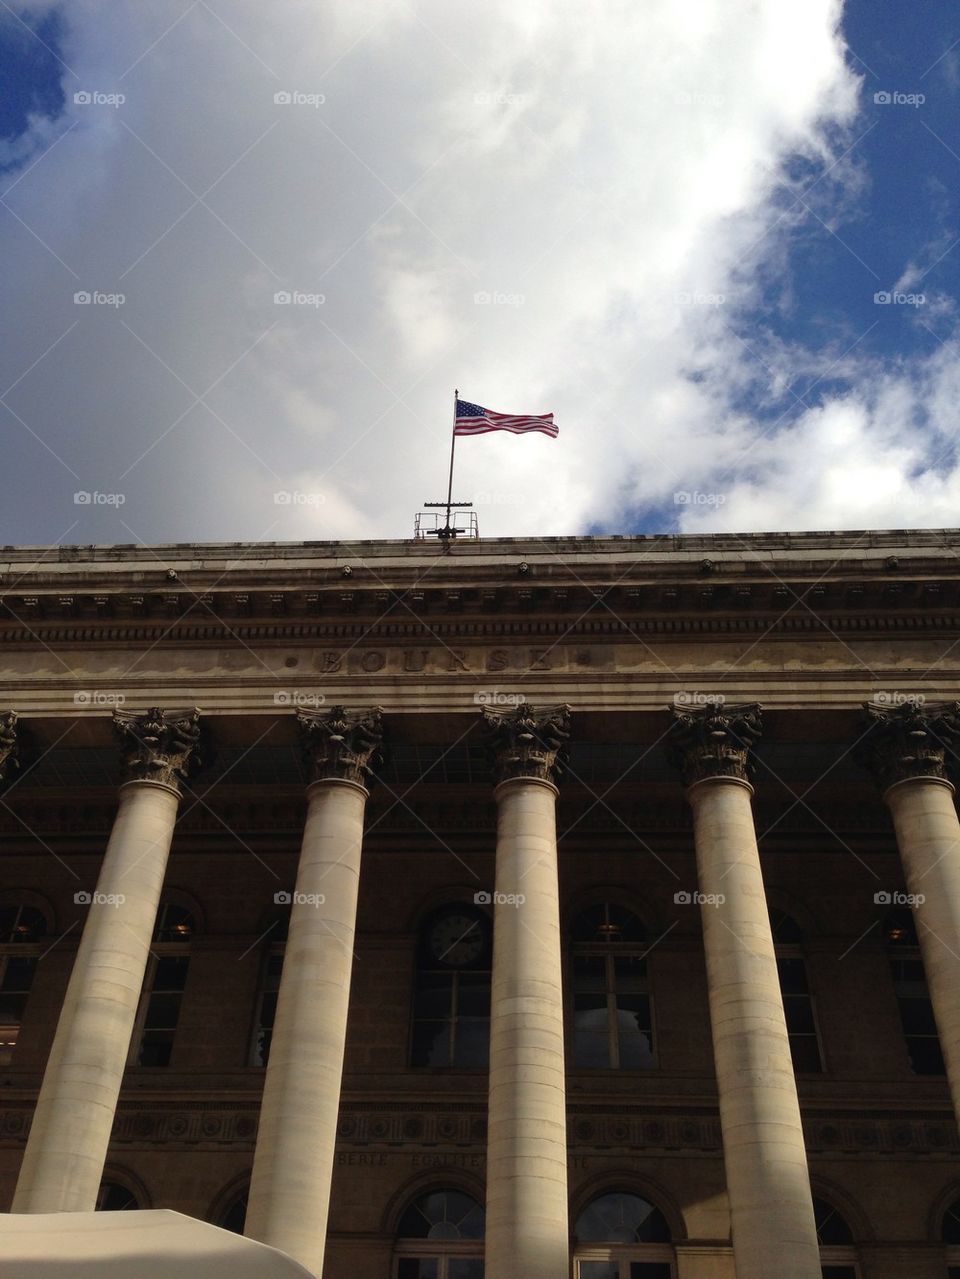 La bourse de Paris avec le drapeau américain pour le tournage d'un